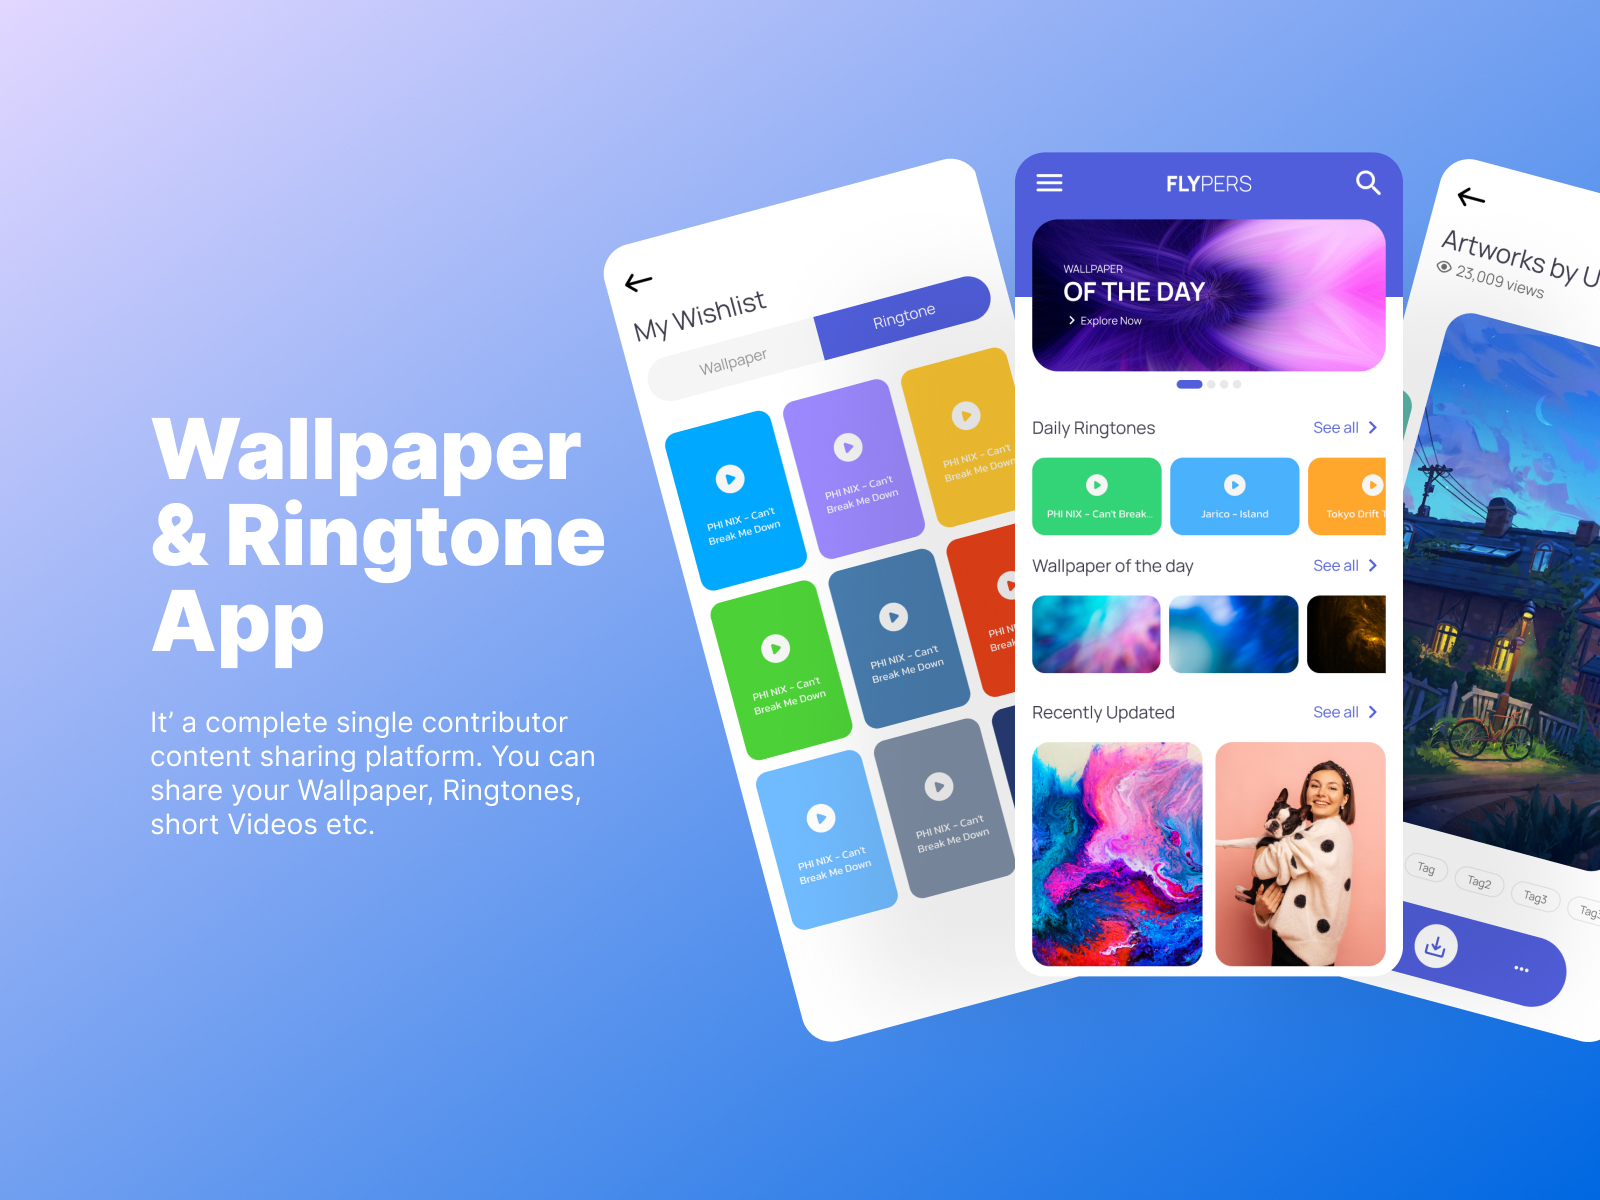 50+] Best Wallpaper and Ringtone App - WallpaperSafari